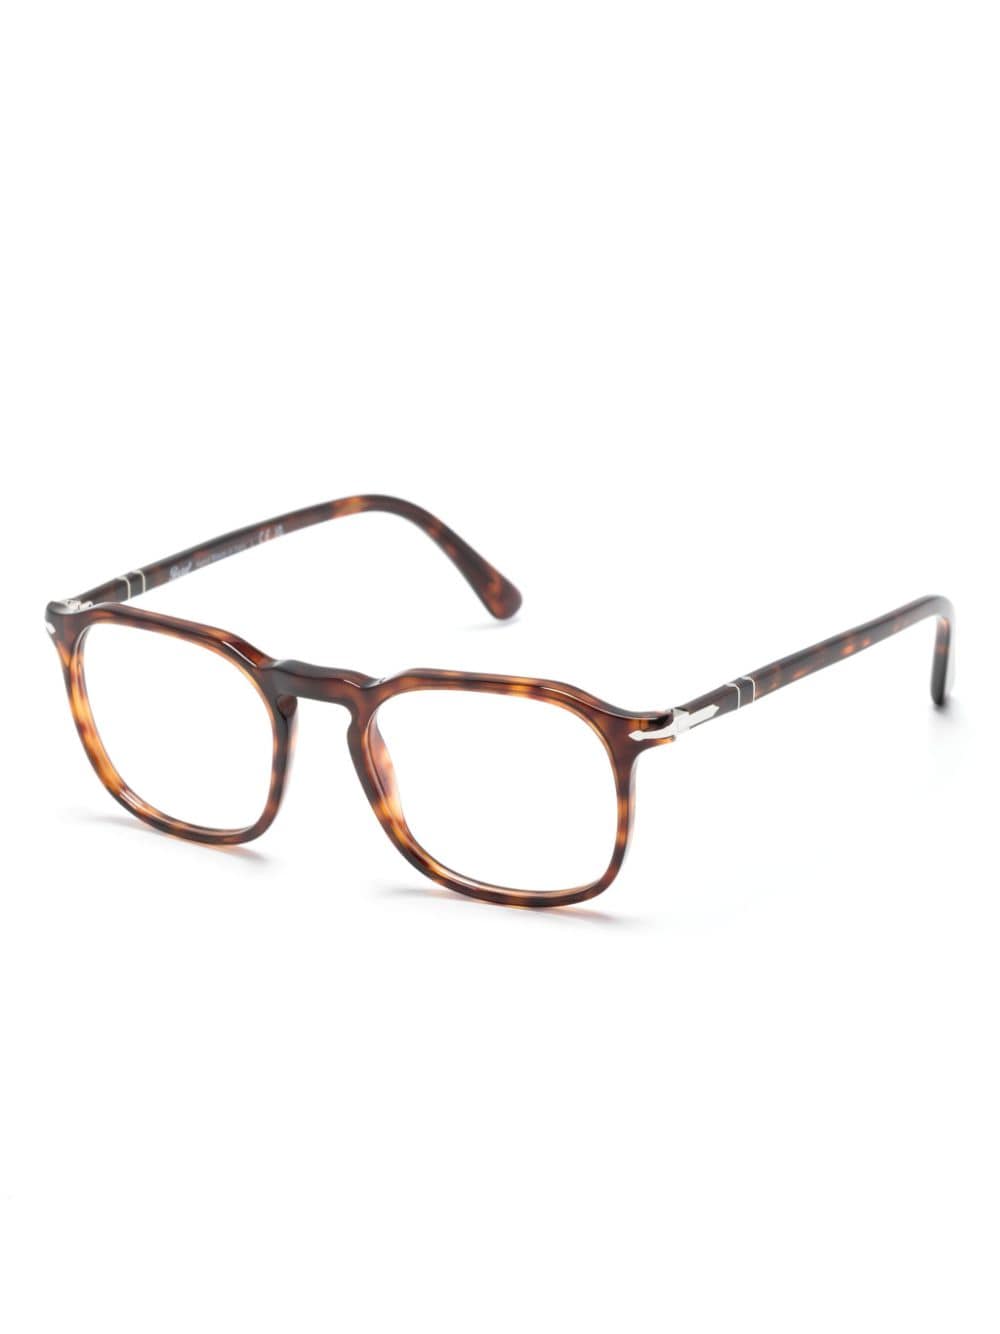 Persol tortoiseshell rectangle-frame glasses - Bruin